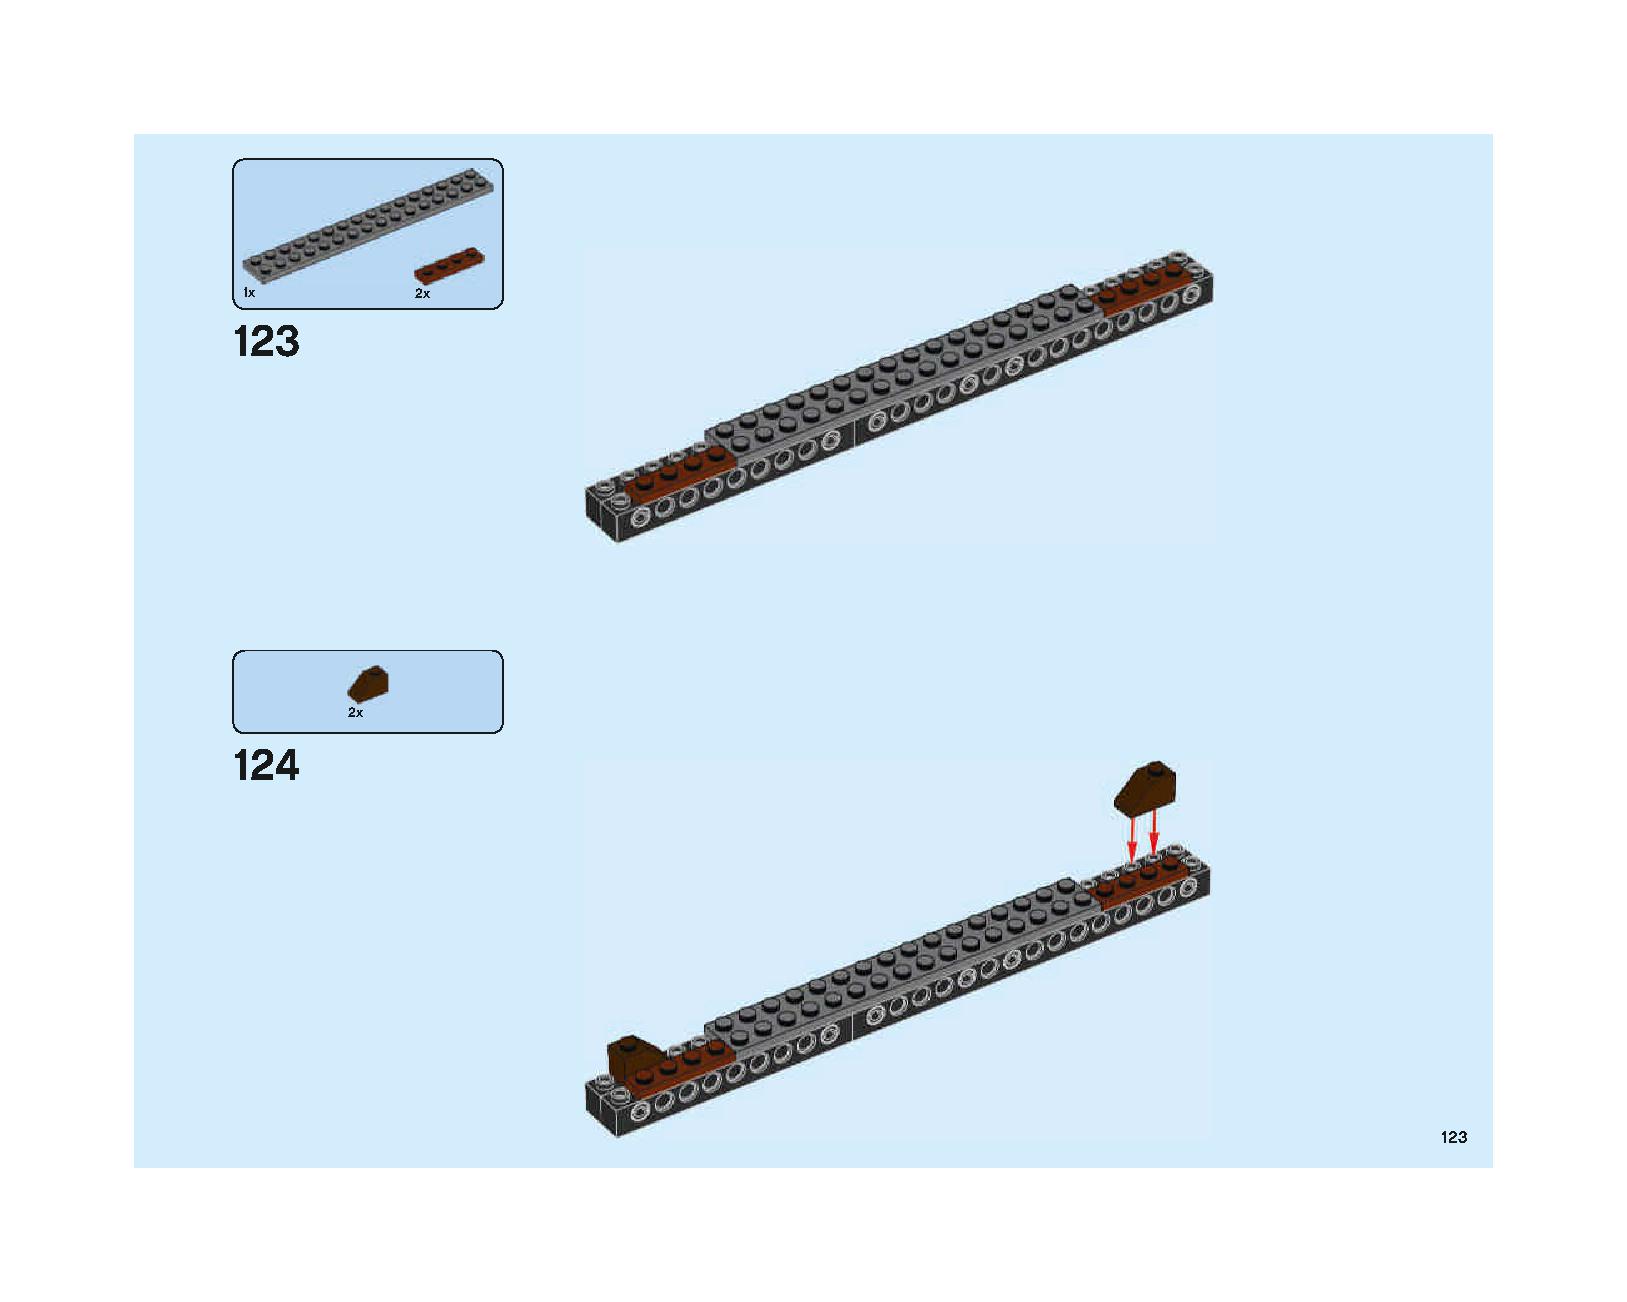 ホグワーツの大広間 75954 レゴの商品情報 レゴの説明書・組立方法 123 page